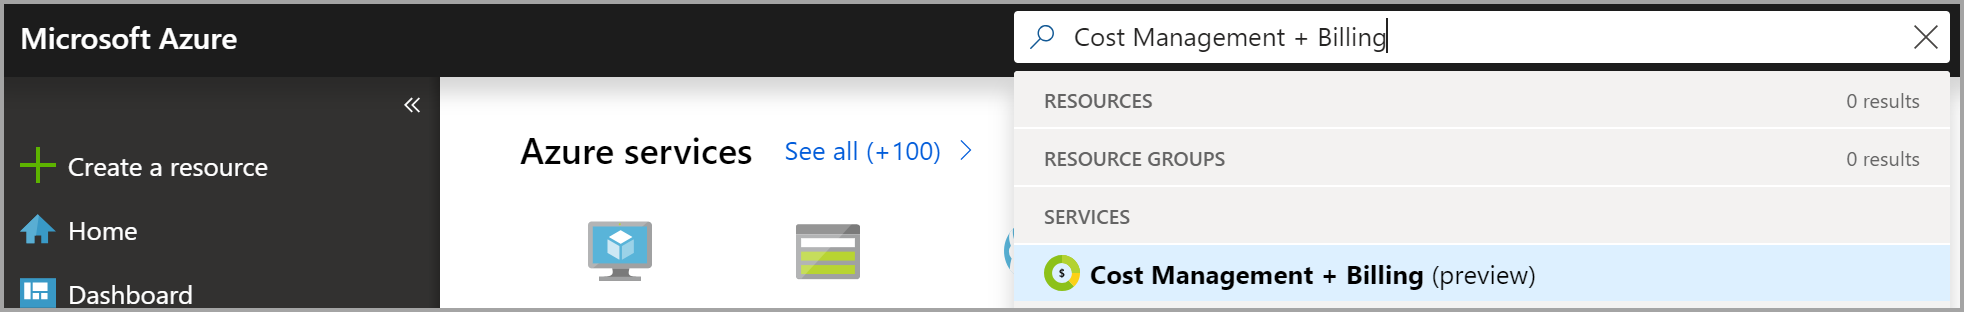 Schermopname van een zoekopdracht in Azure Portal naar kostenbeheer en facturering.